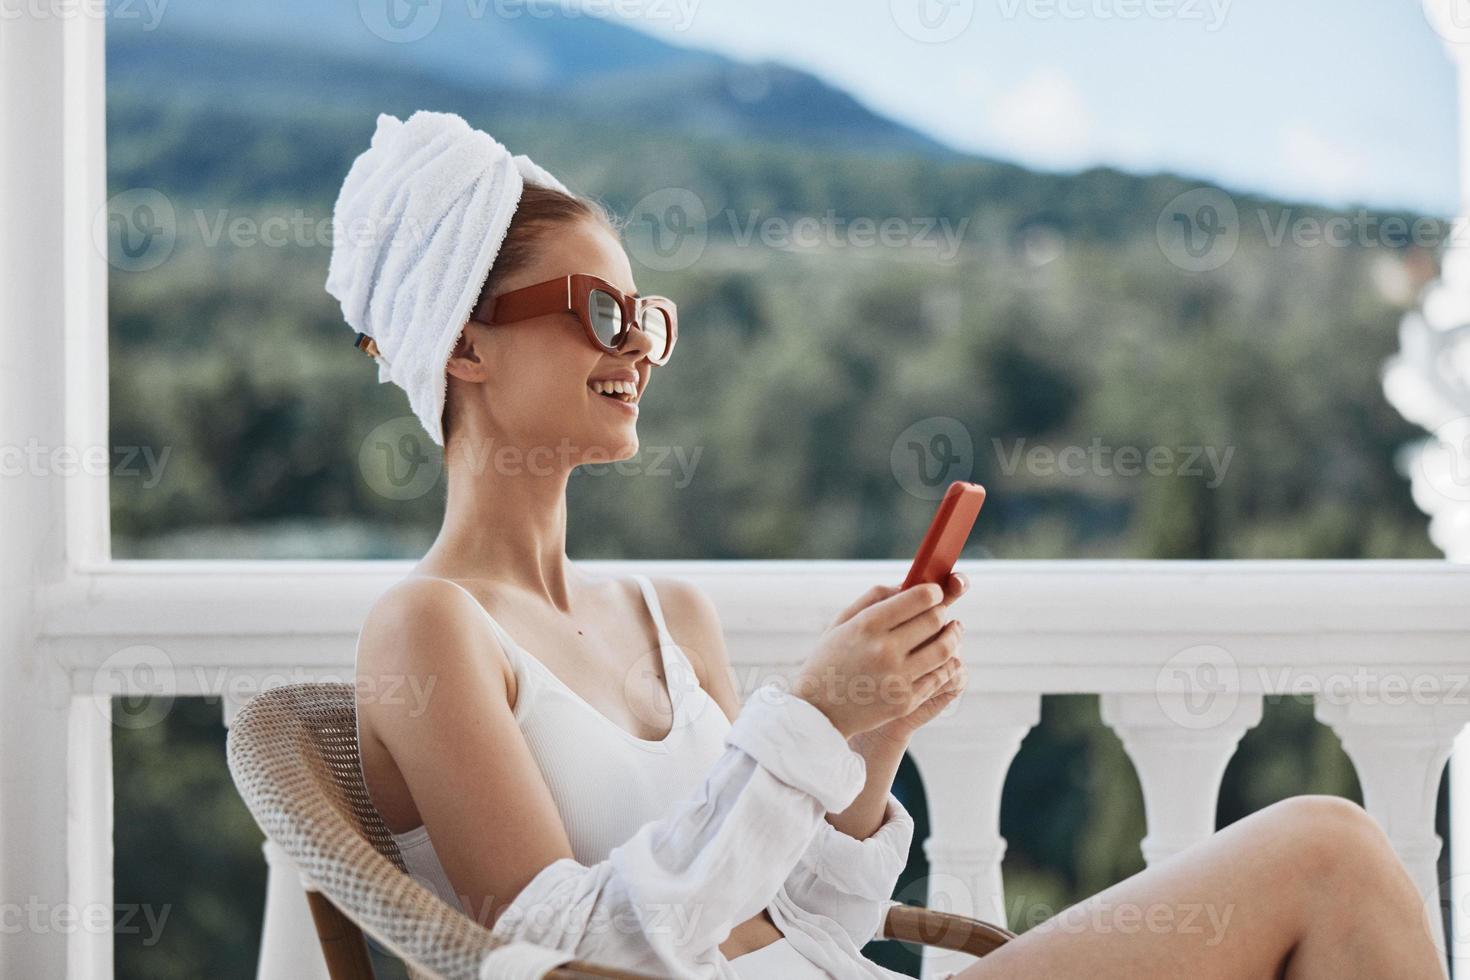 attrayant Jeune femme dans des lunettes de soleil est assis sur le balcon et les usages le téléphone paresseux Matin photo